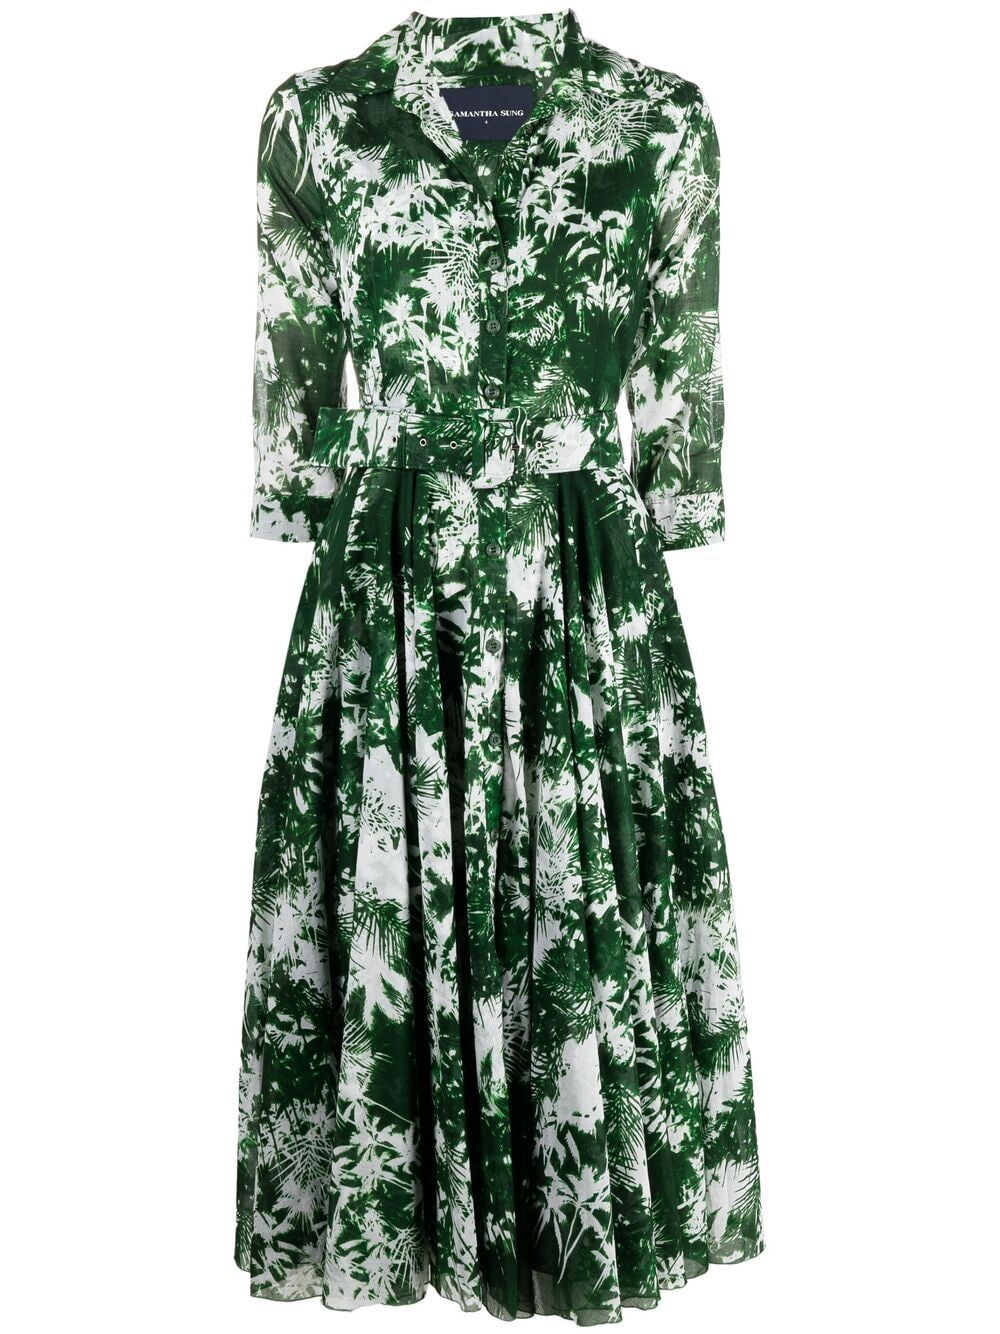 фото Samantha sung платье-рубашка ivy с принтом